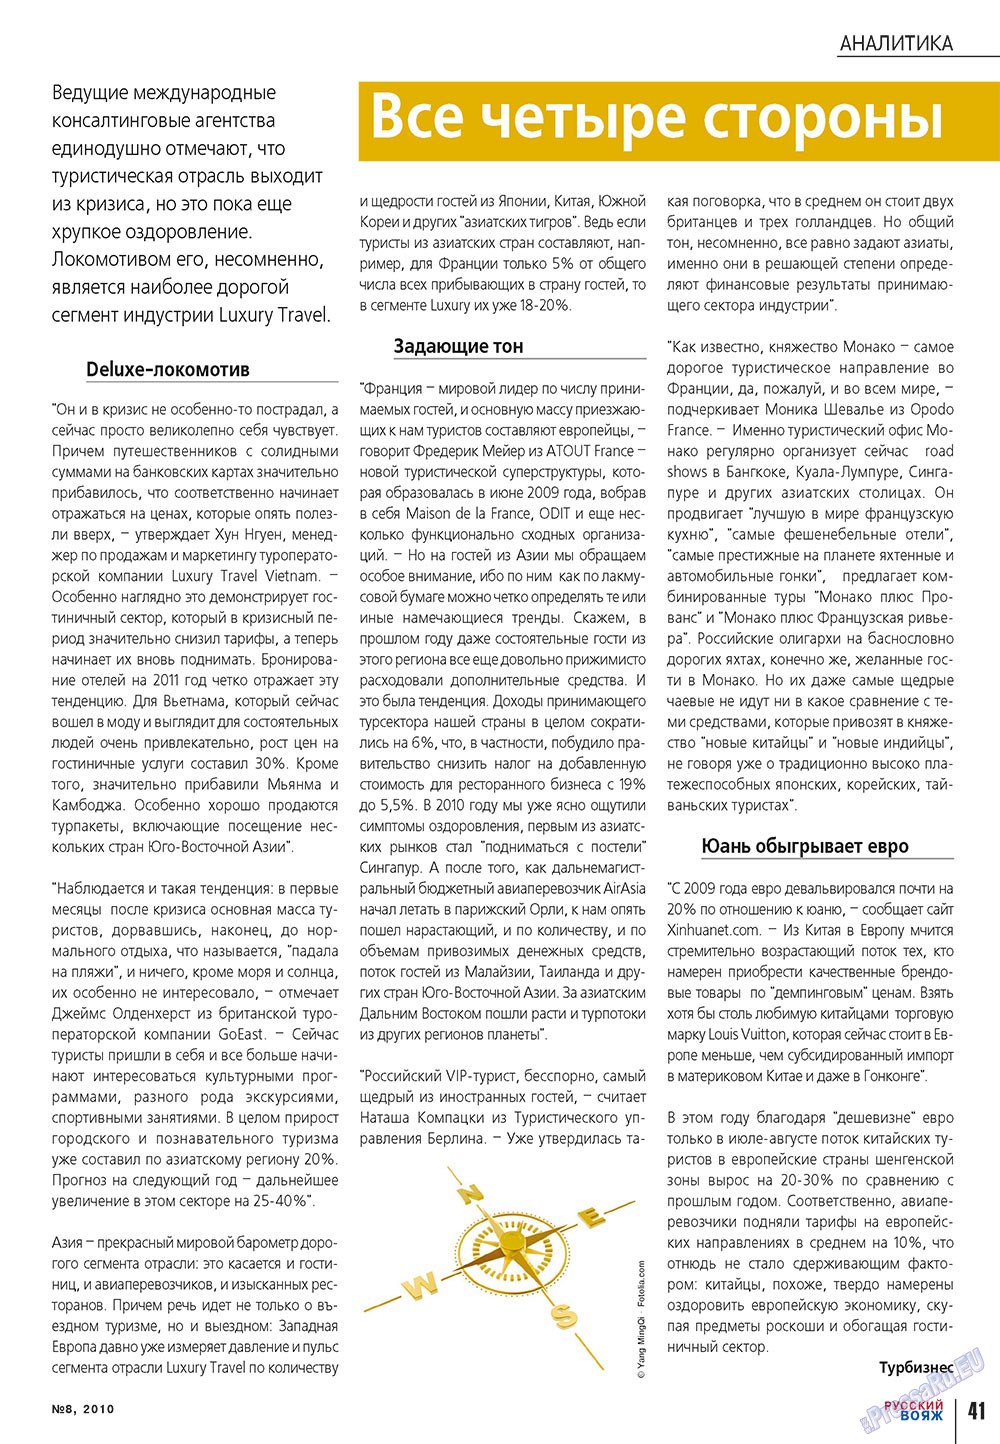 Русский вояж (журнал). 2010 год, номер 8, стр. 41